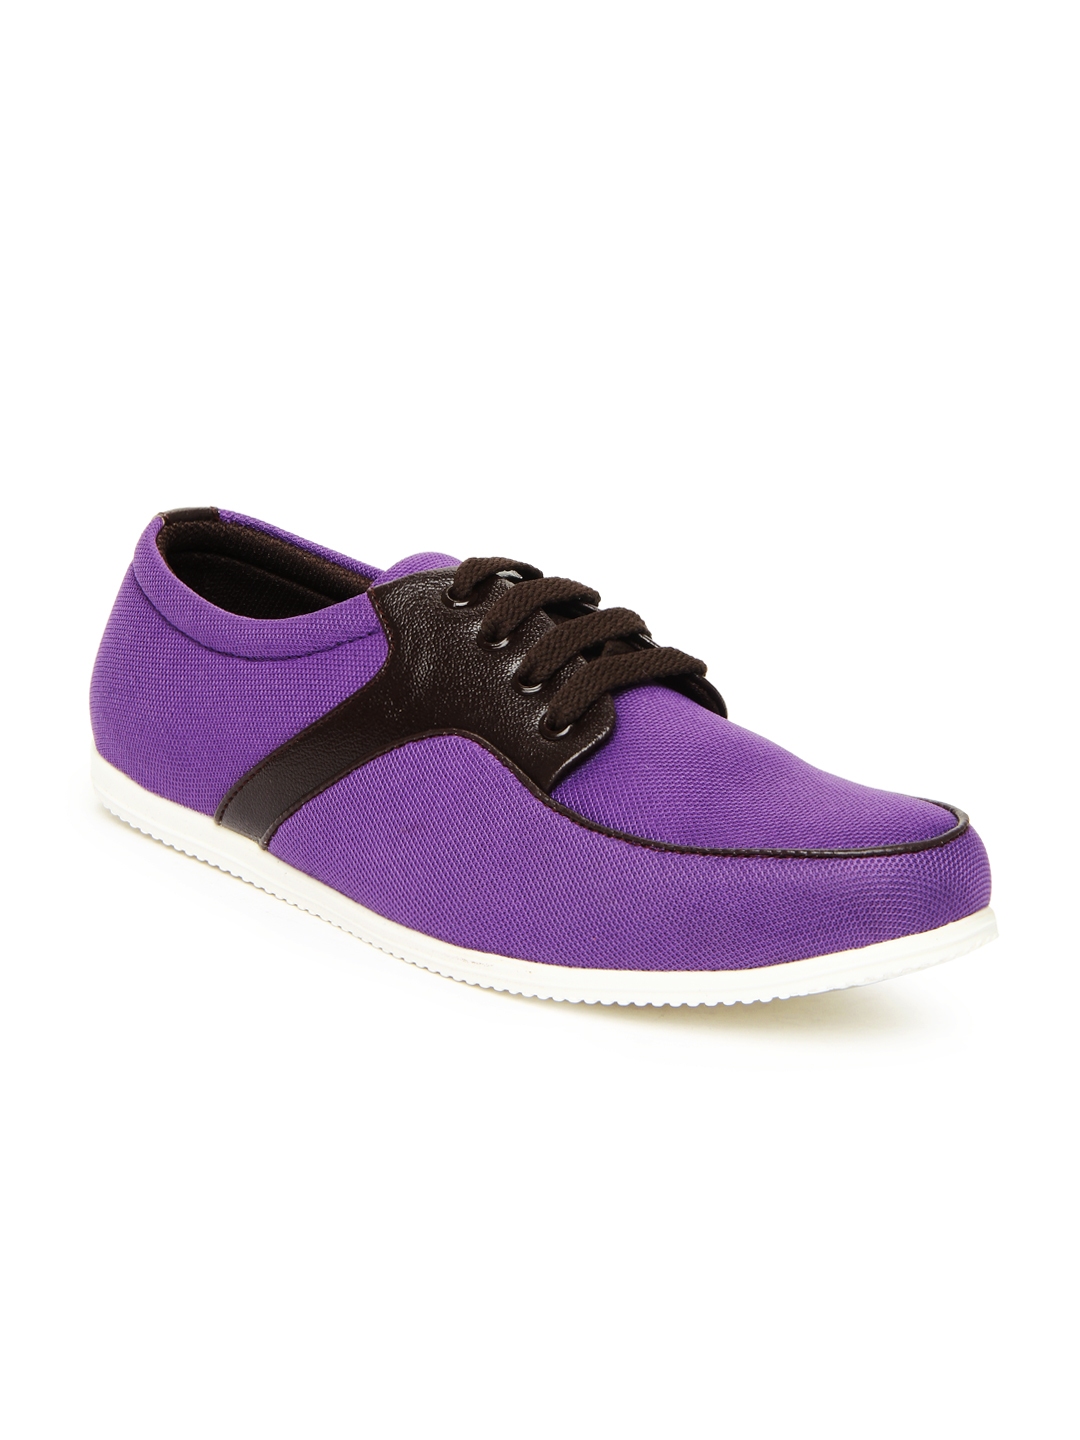 men purple shoes